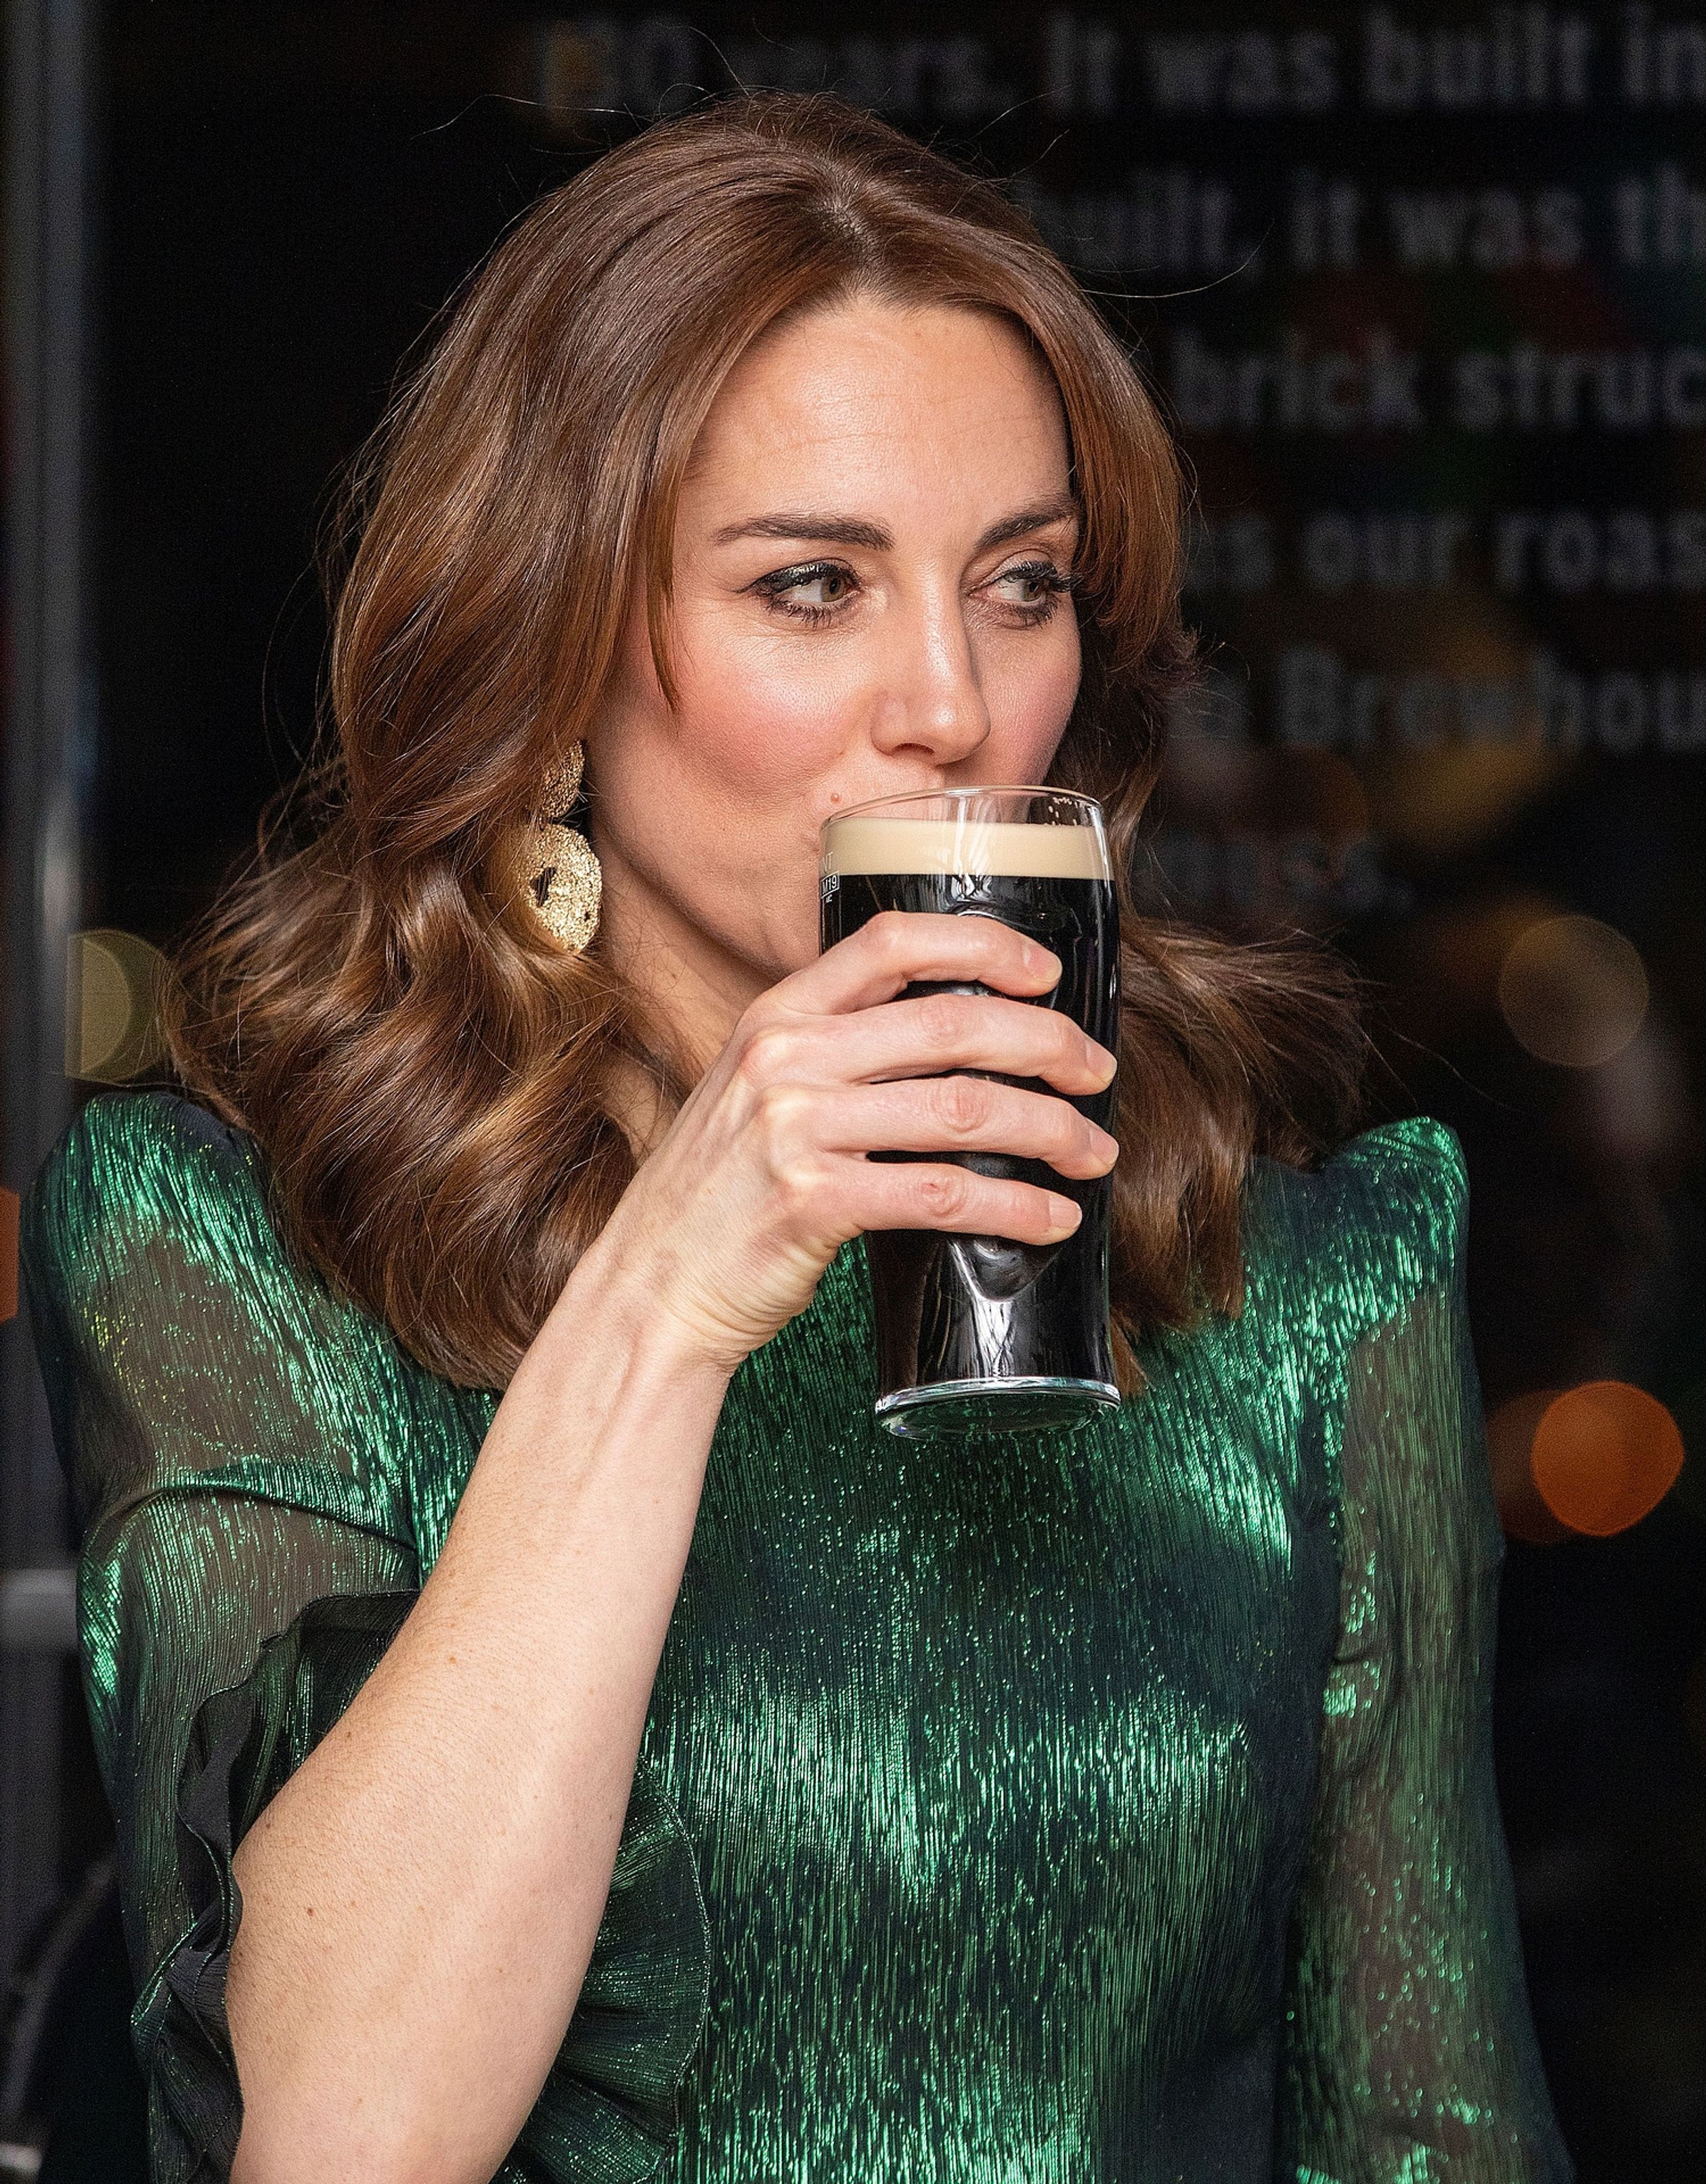 Cheers! Tijdens het bezoek aan Ierland afgelopen maart nipt Catherine van een Guinness-biertje.